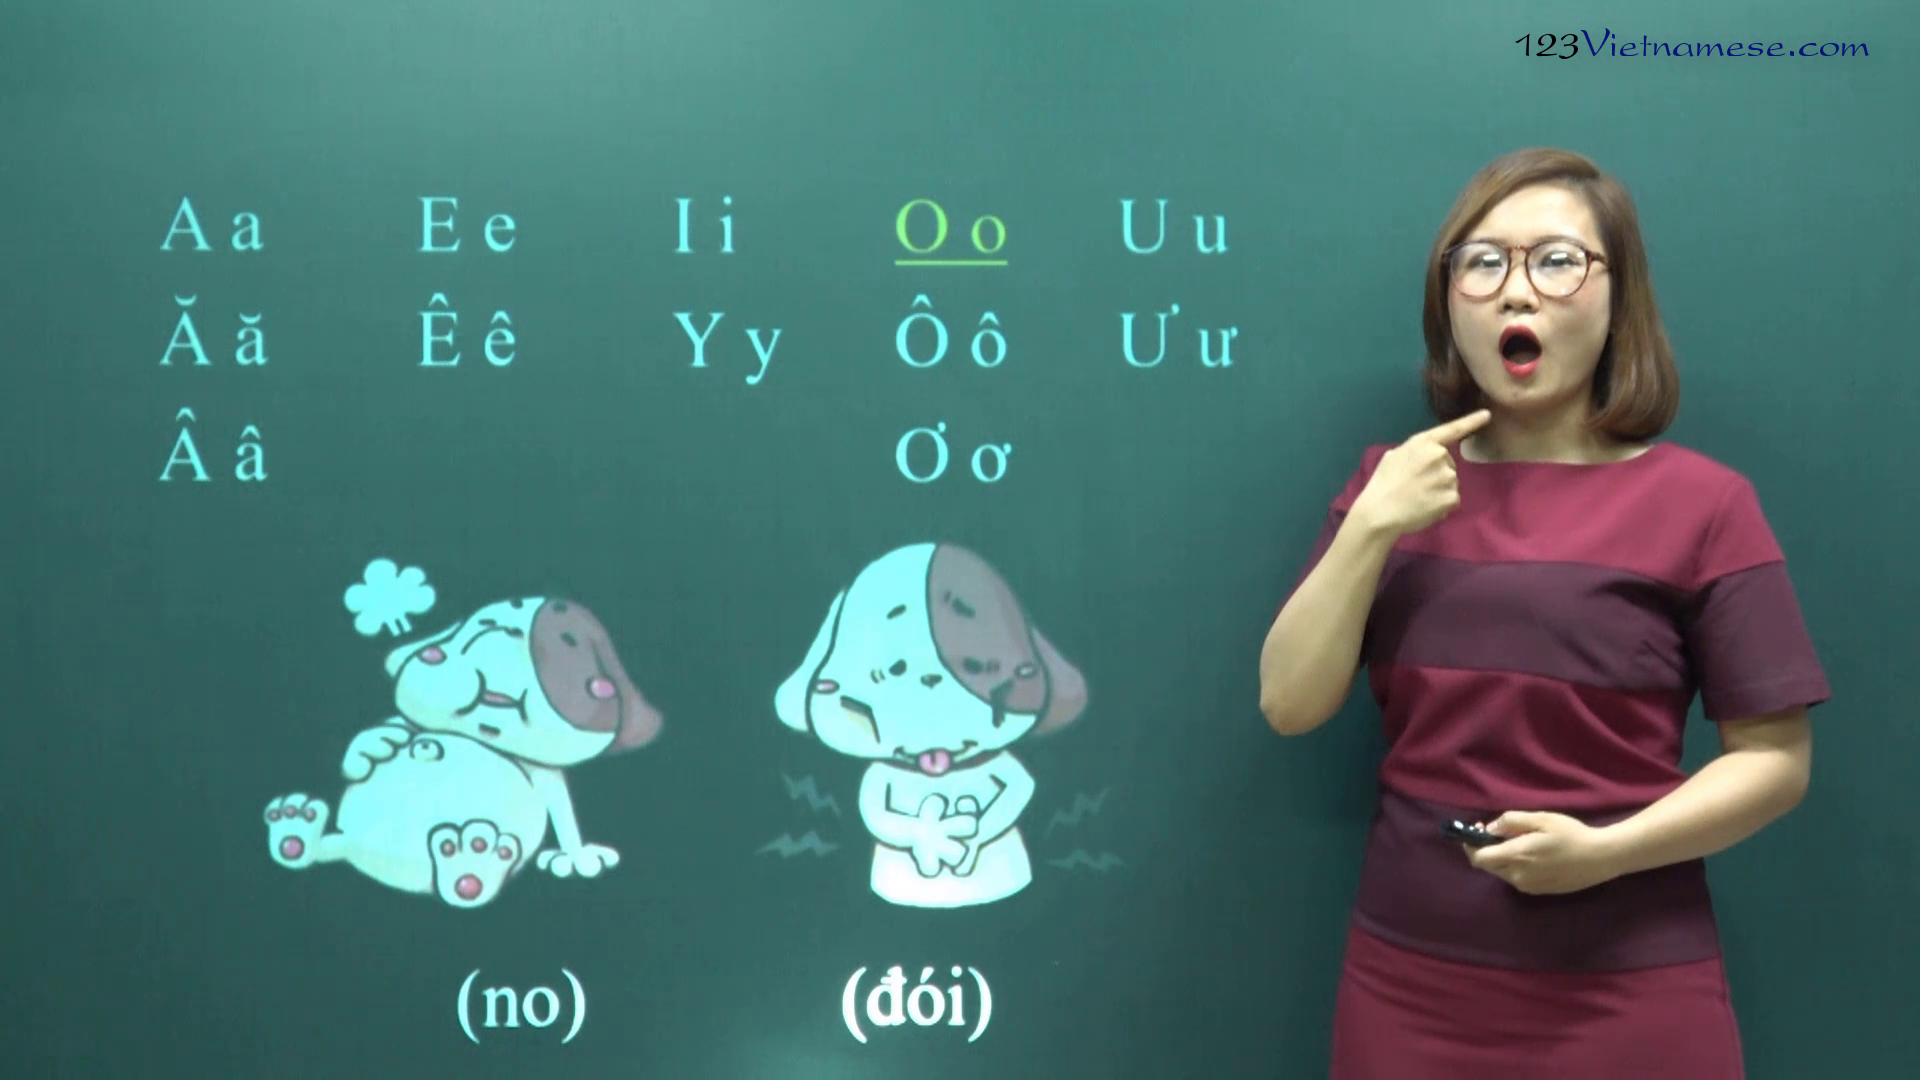 Single vowels in Vietnamese